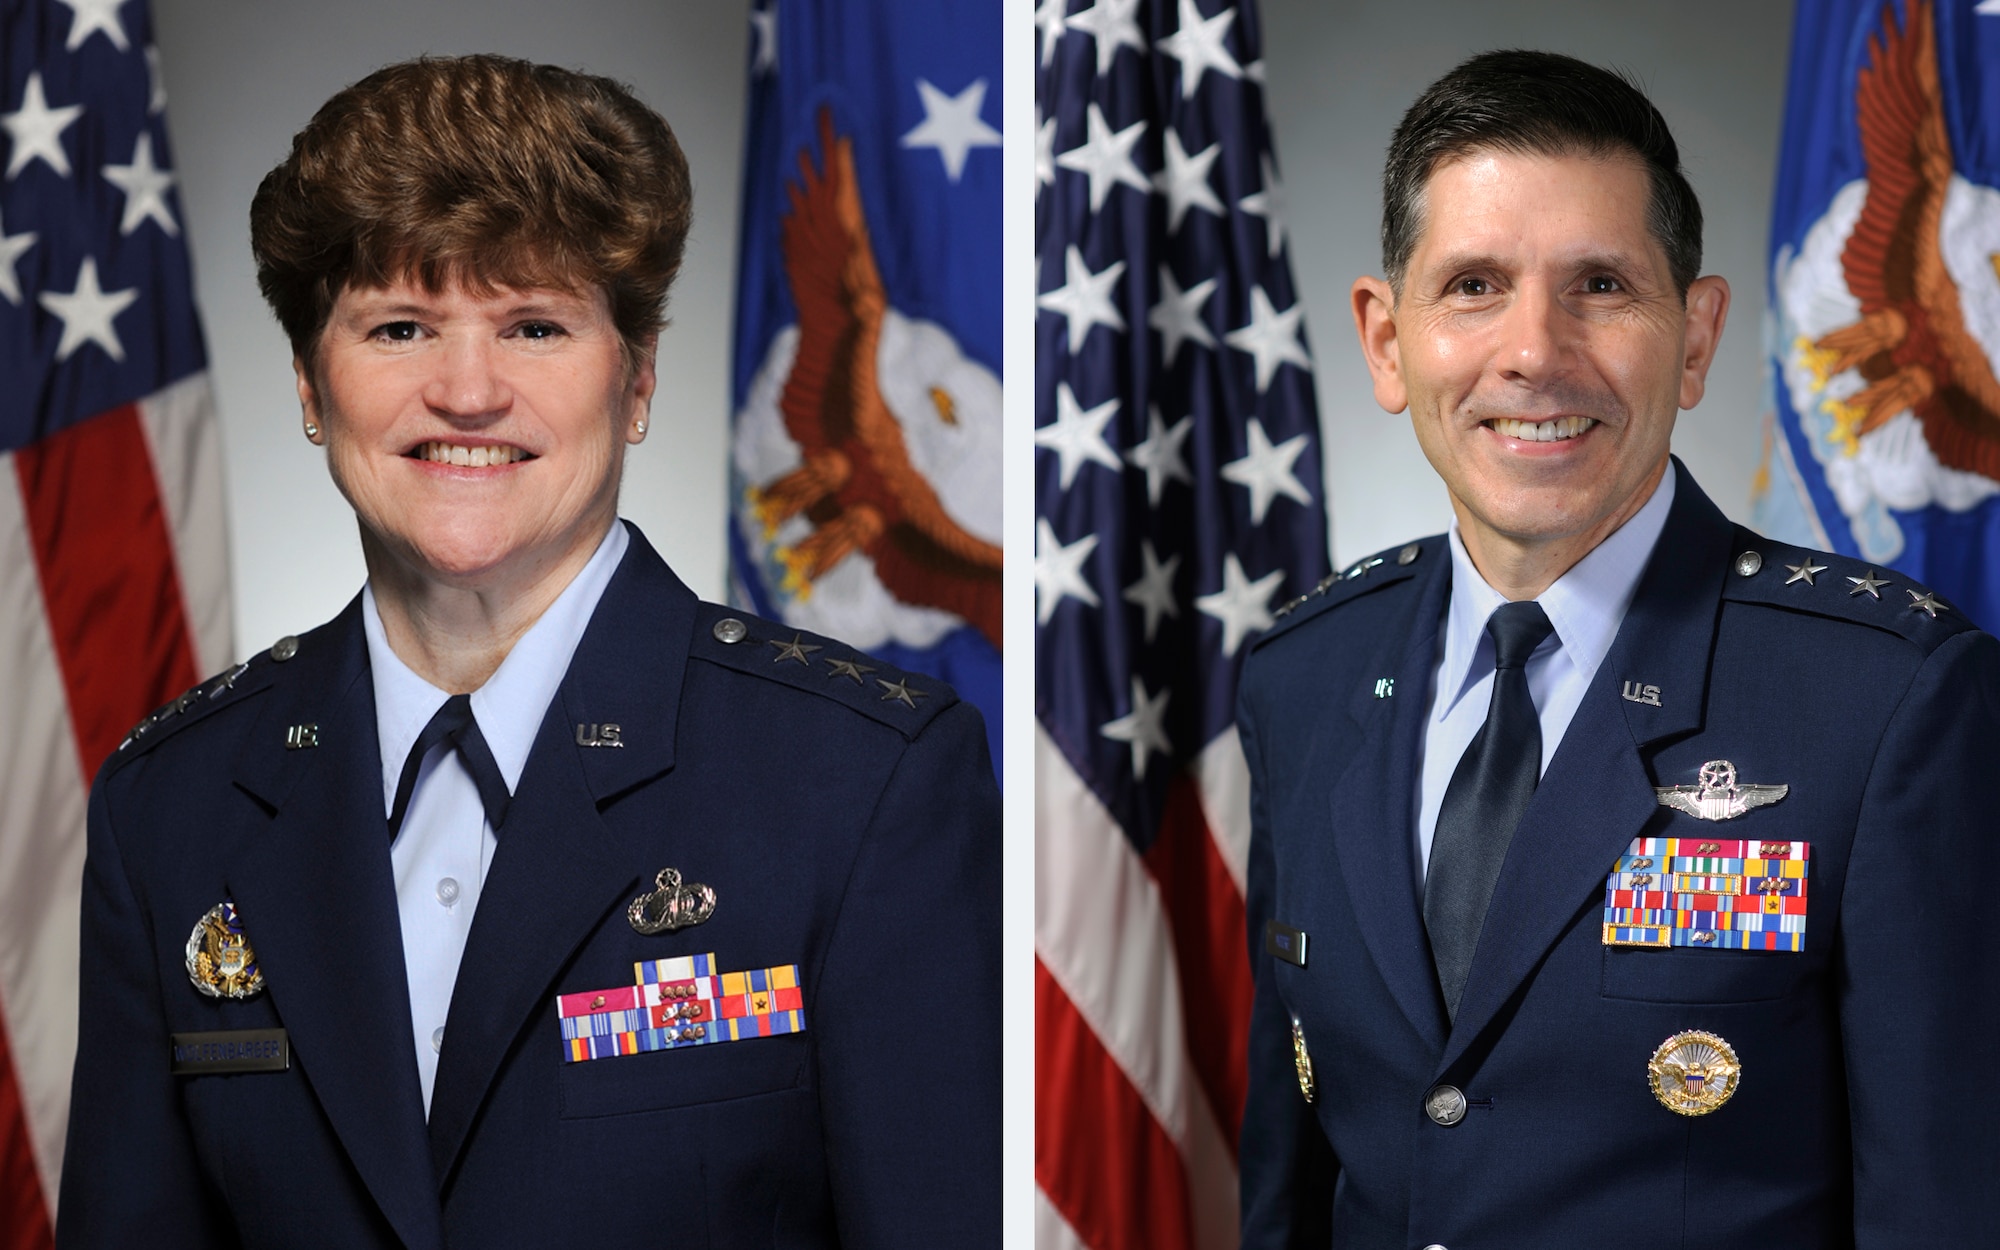 Lt. Gen. Janet C. Wolfenbarger & Lt. Gen. C.D. Moore II